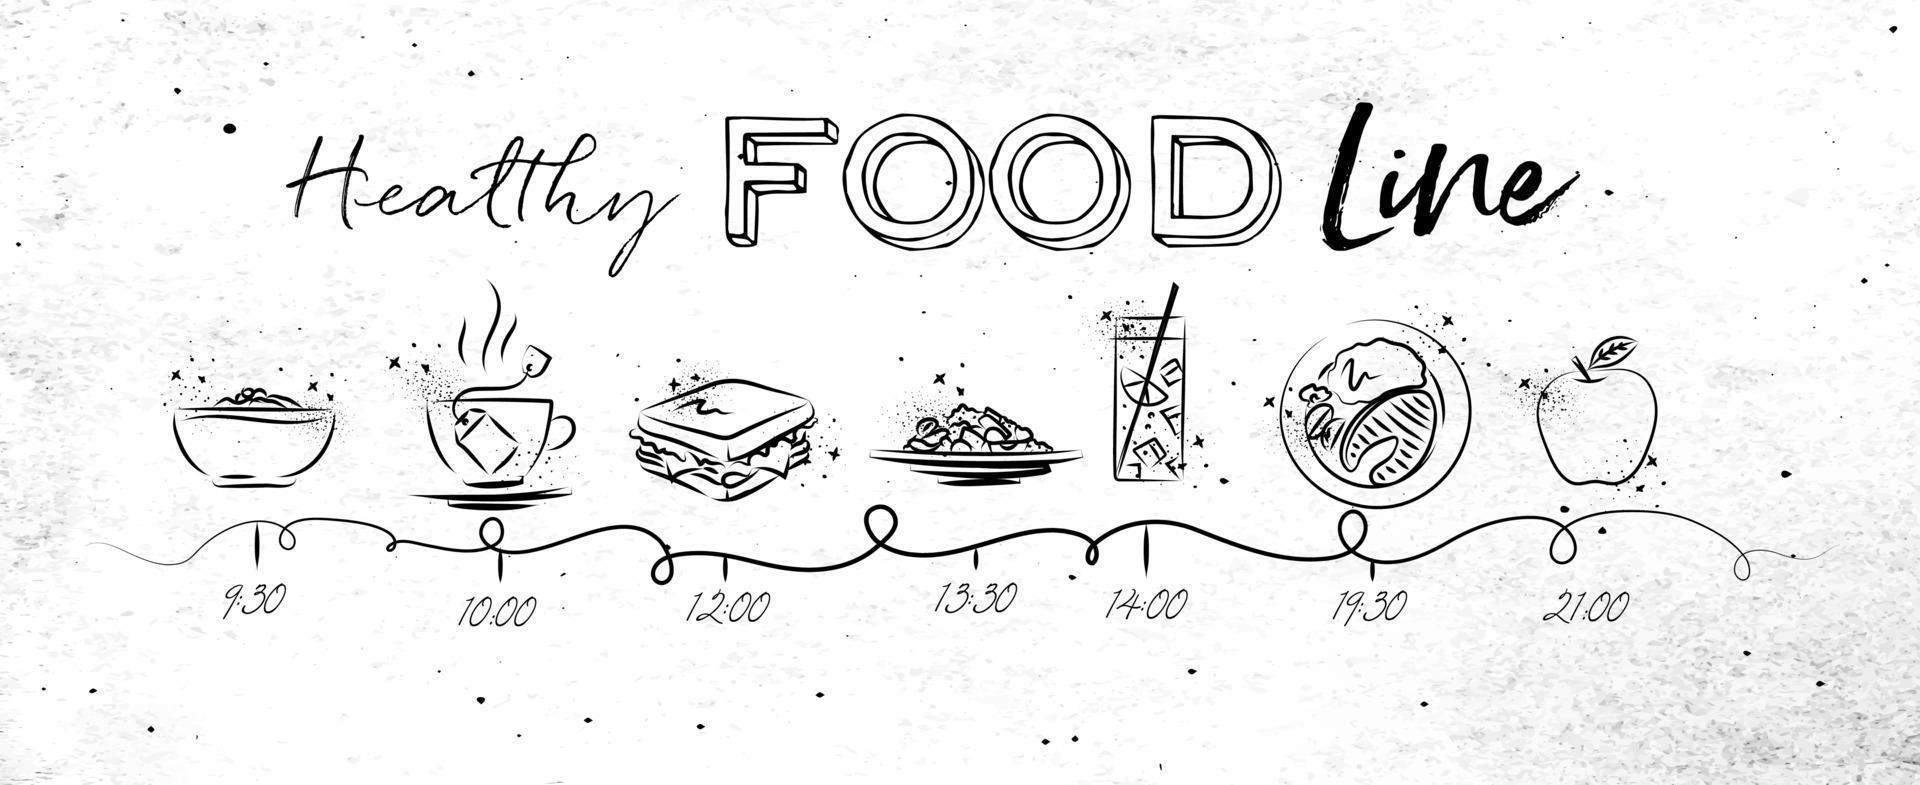 La línea de tiempo sobre el tema de la comida saludable ilustró la hora de la comida y los iconos de los alimentos dibujados con líneas negras sobre papel sucio. vector